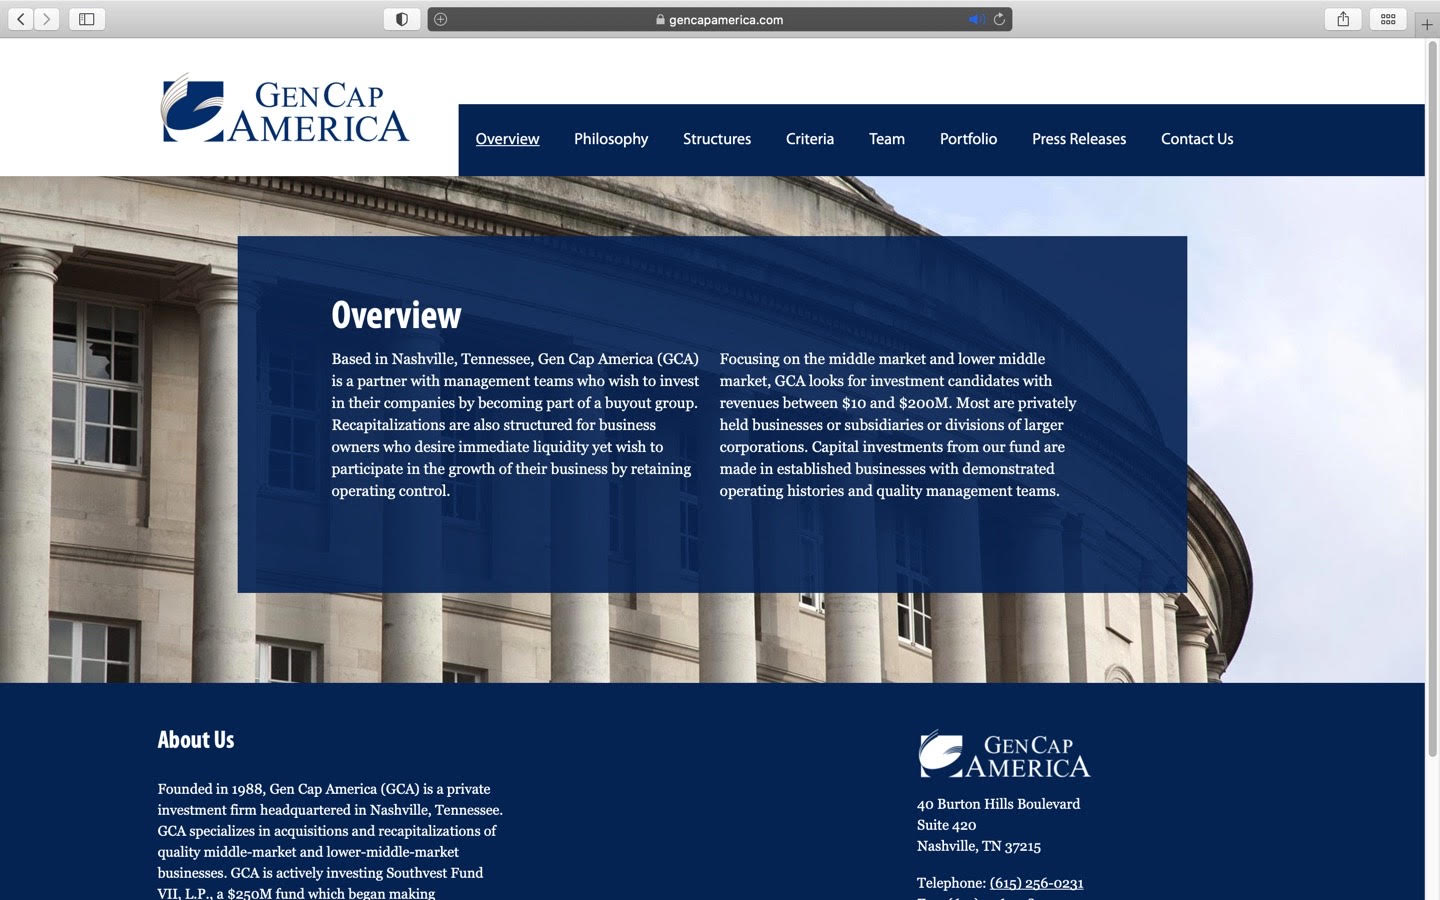 Gen Cap America website homepage